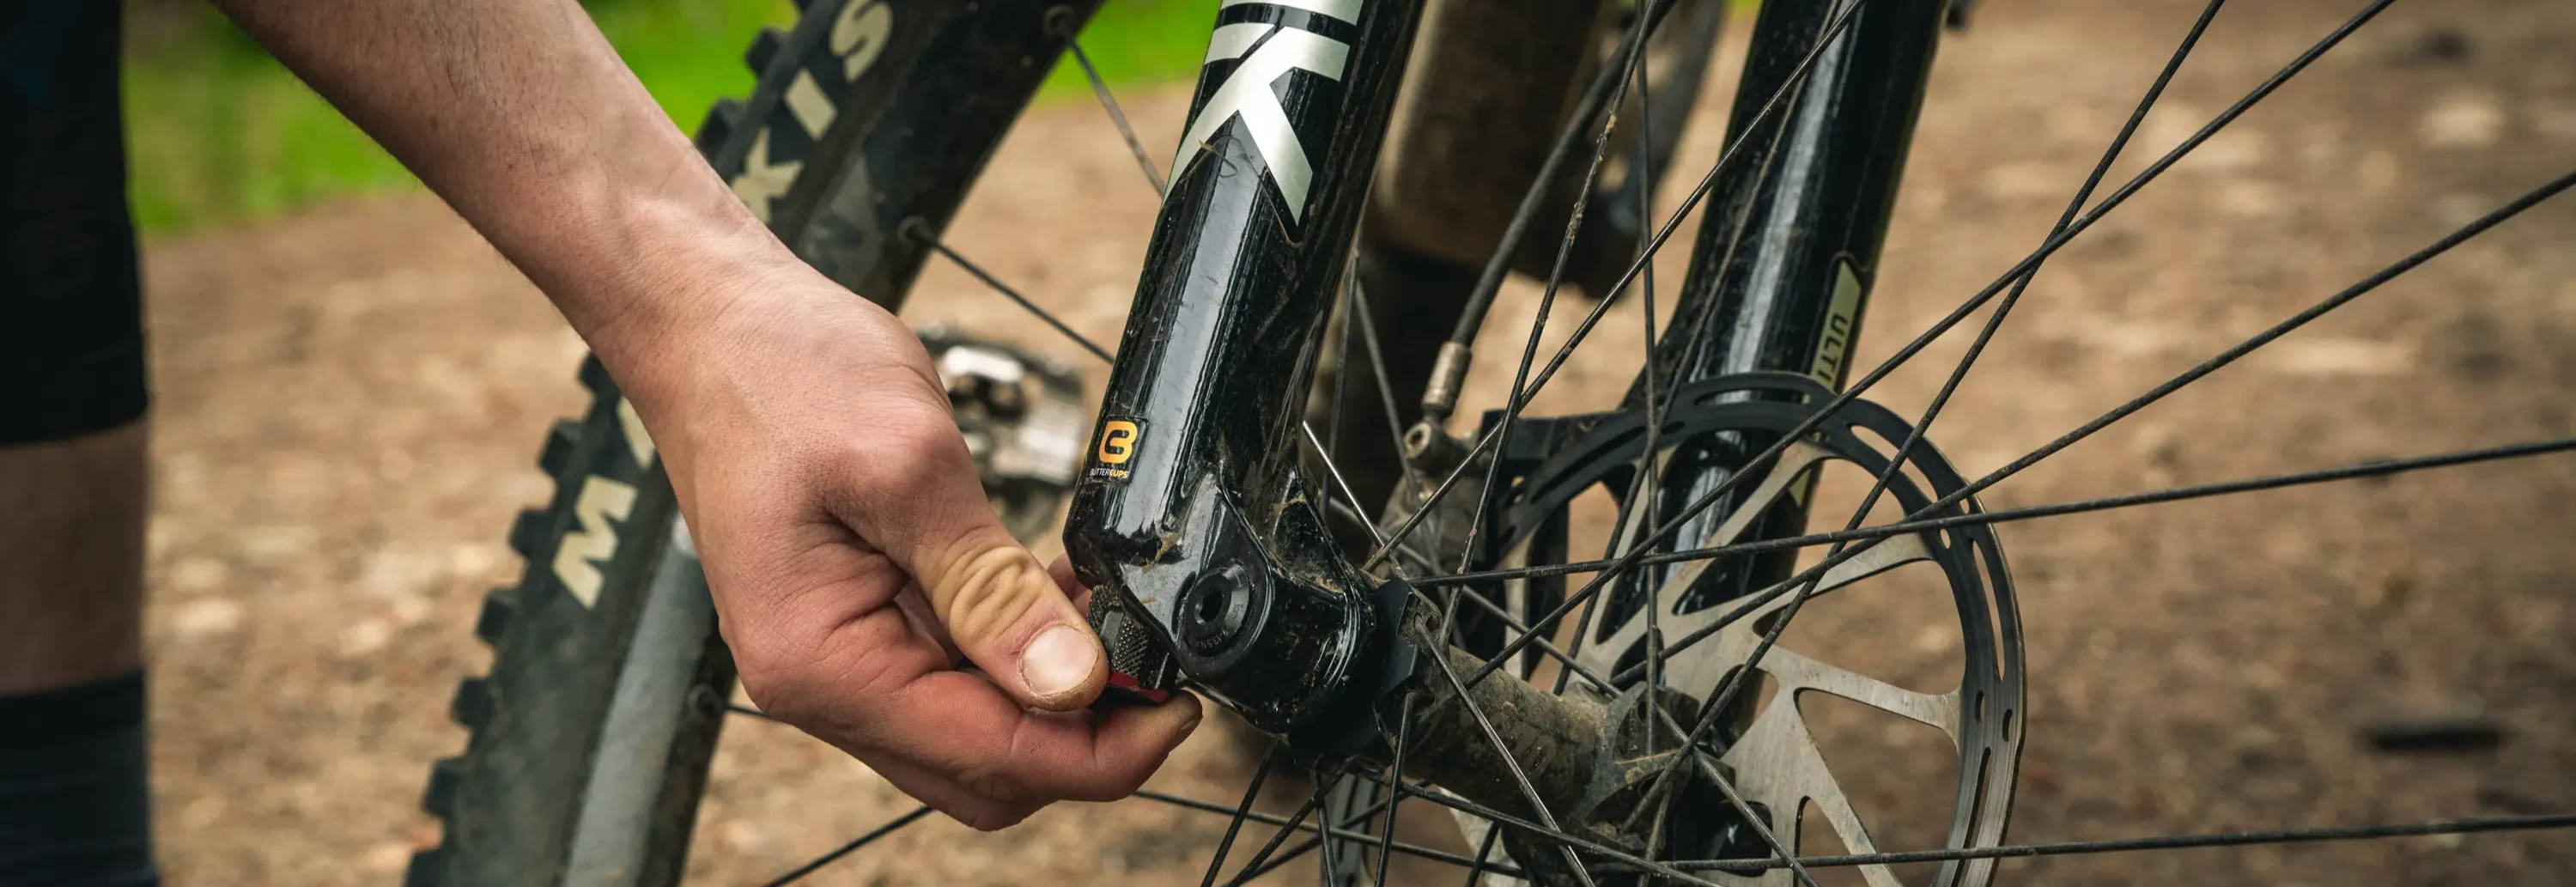 detail of adjusting rebound knob on rockshox lyrik mountain bike fork